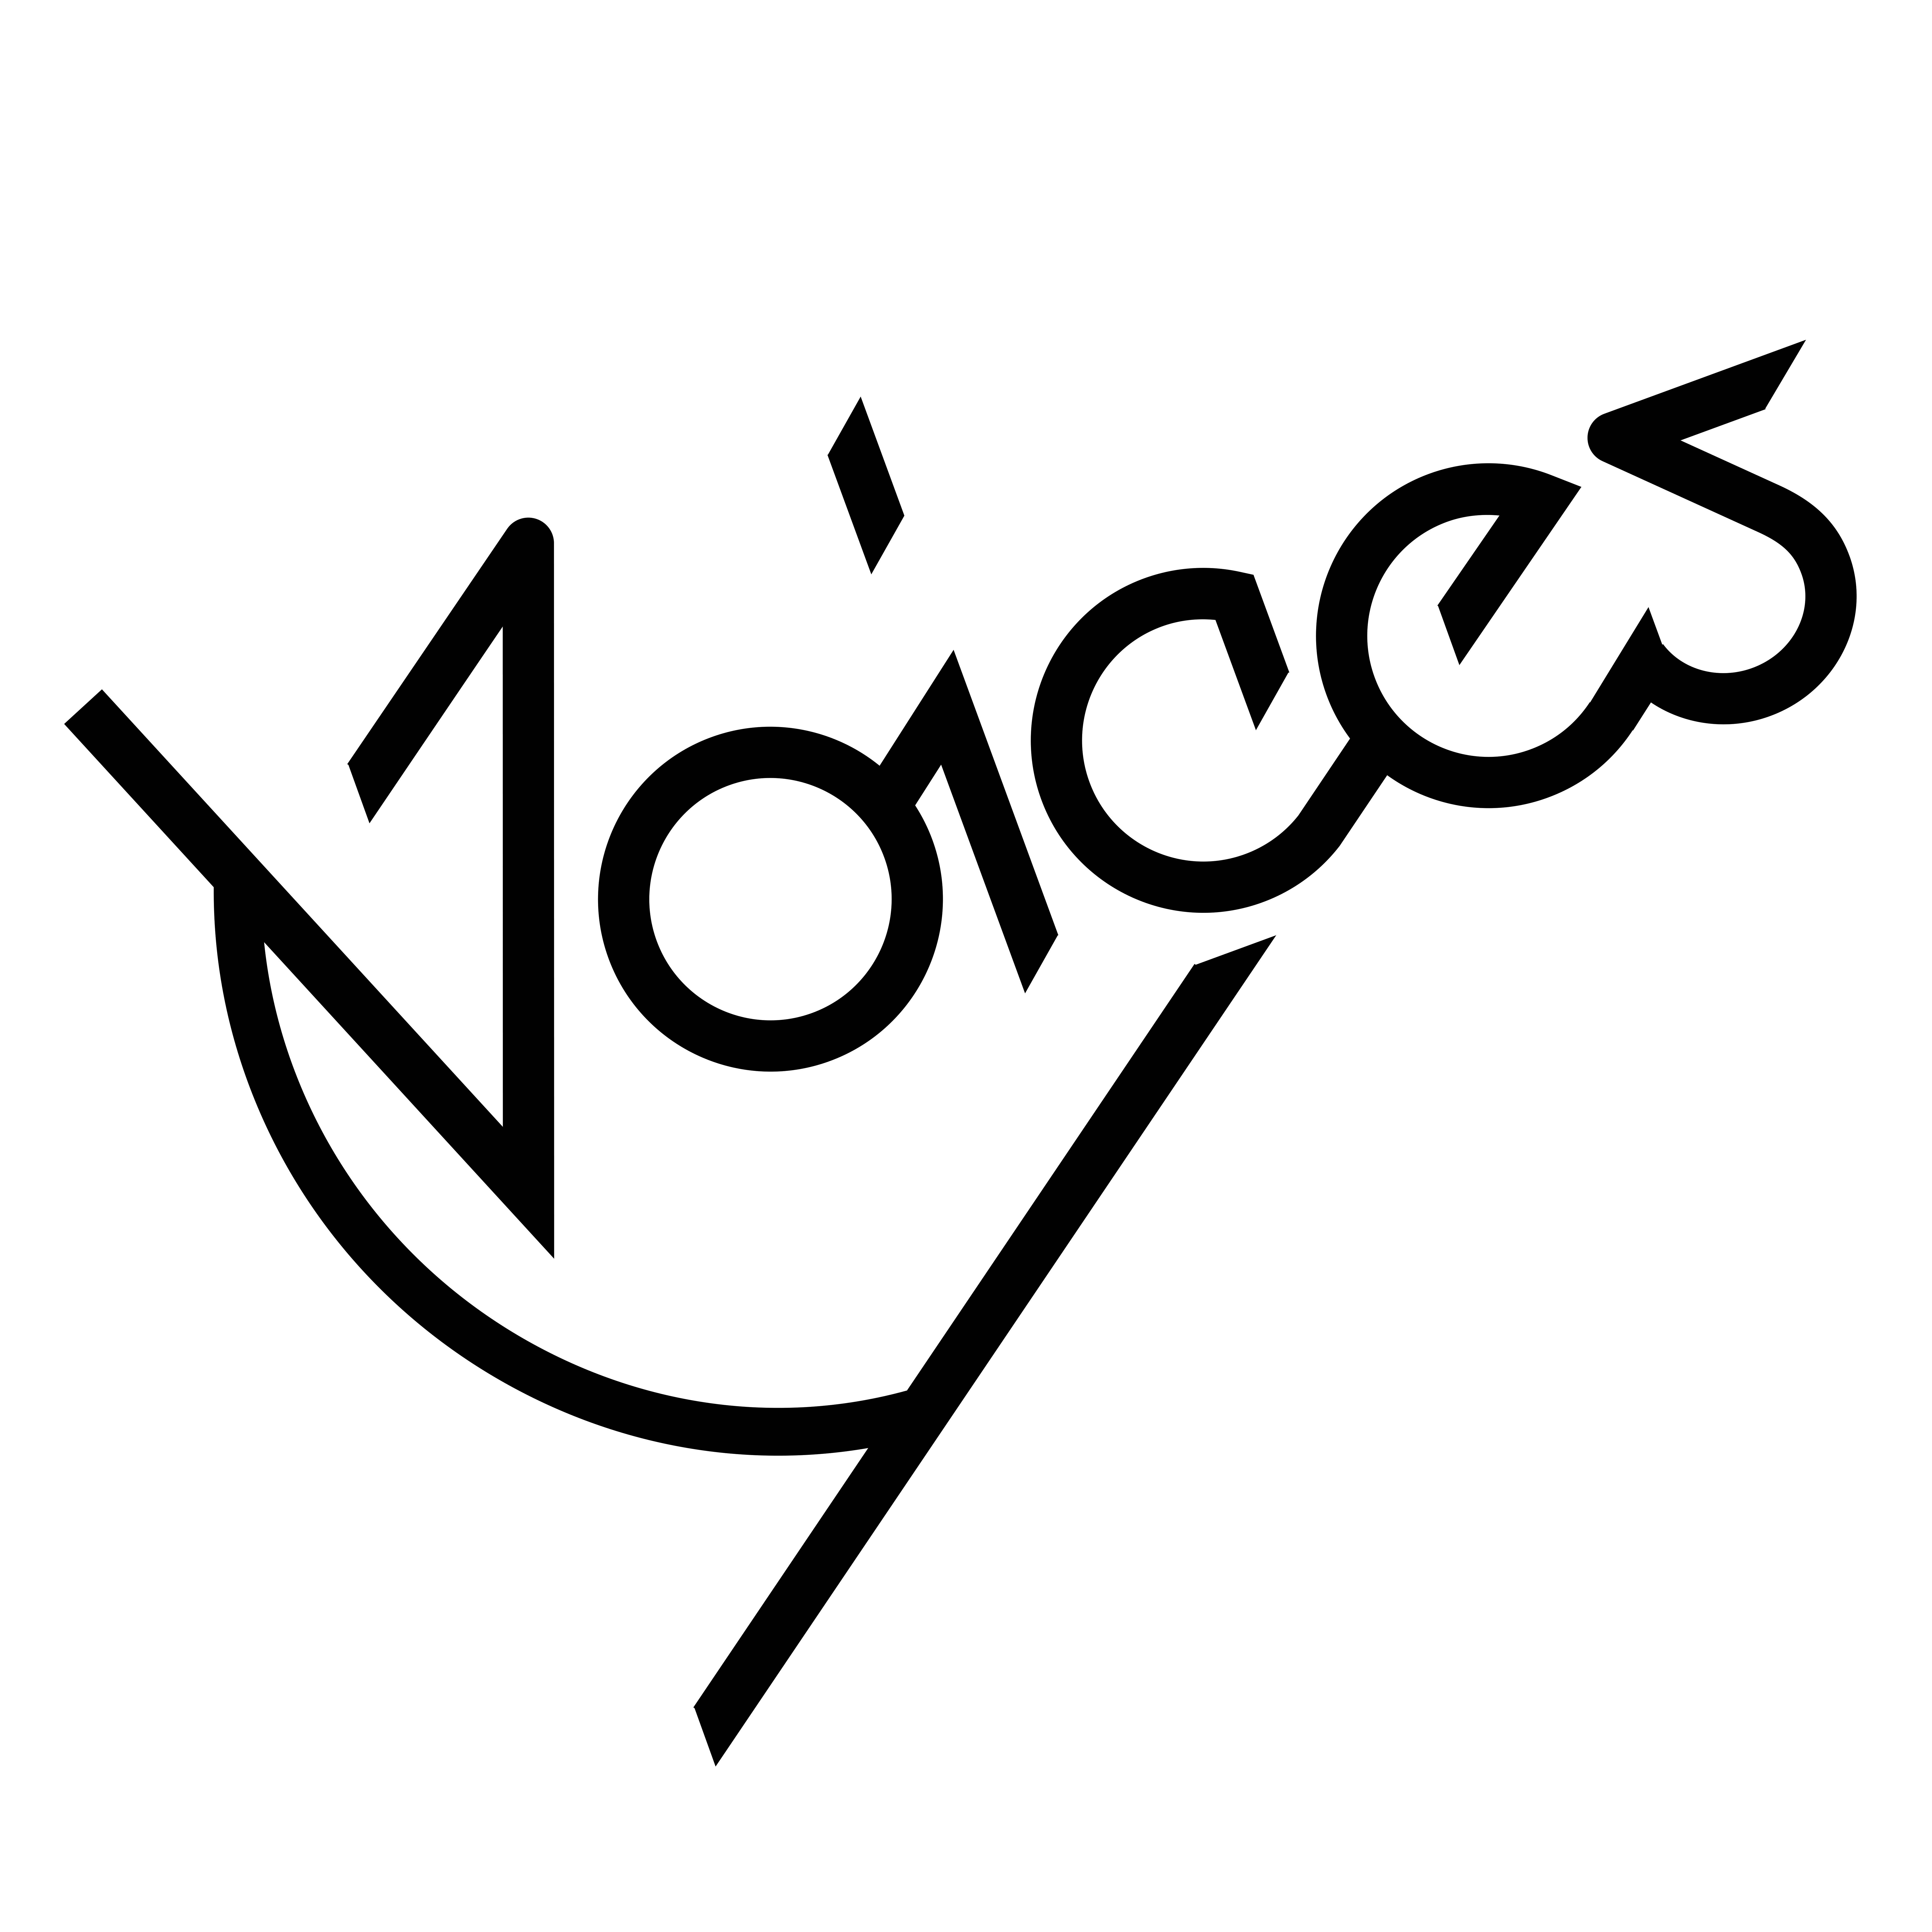 voices_logo 2.jpg